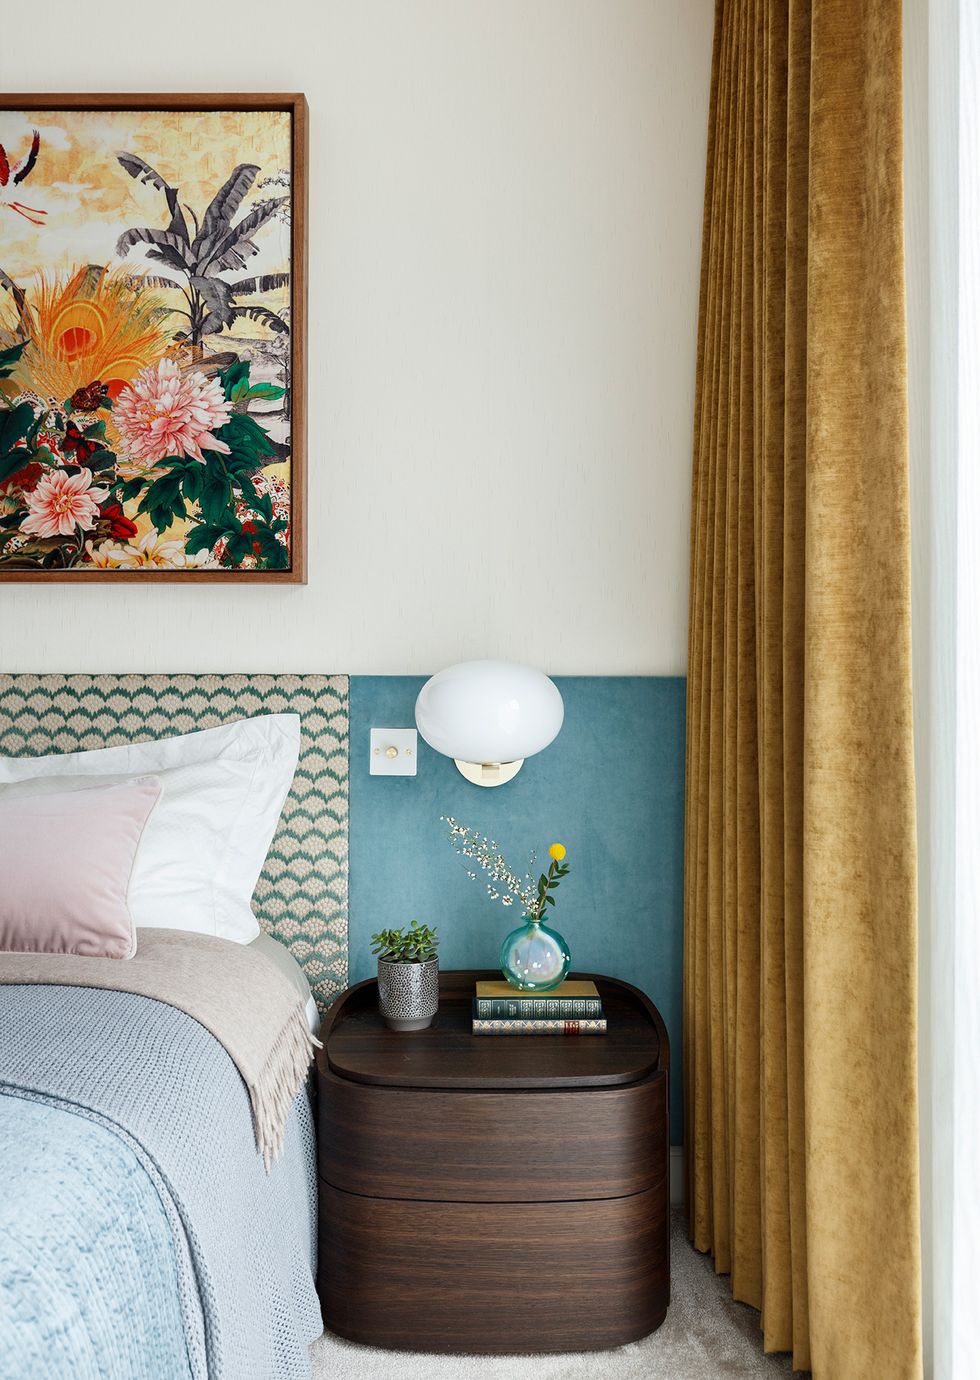 Táp đầu giường bằng gỗ đậm màu, đơn giản nhưng sang trọng và tiện ích. Bên trên đặt một lọ hoa thủy tinh, sách và chậu cây sen đá. Chiếc đèn ngủ hình tròn gắn tường đối xứng trông rất thanh lịch.